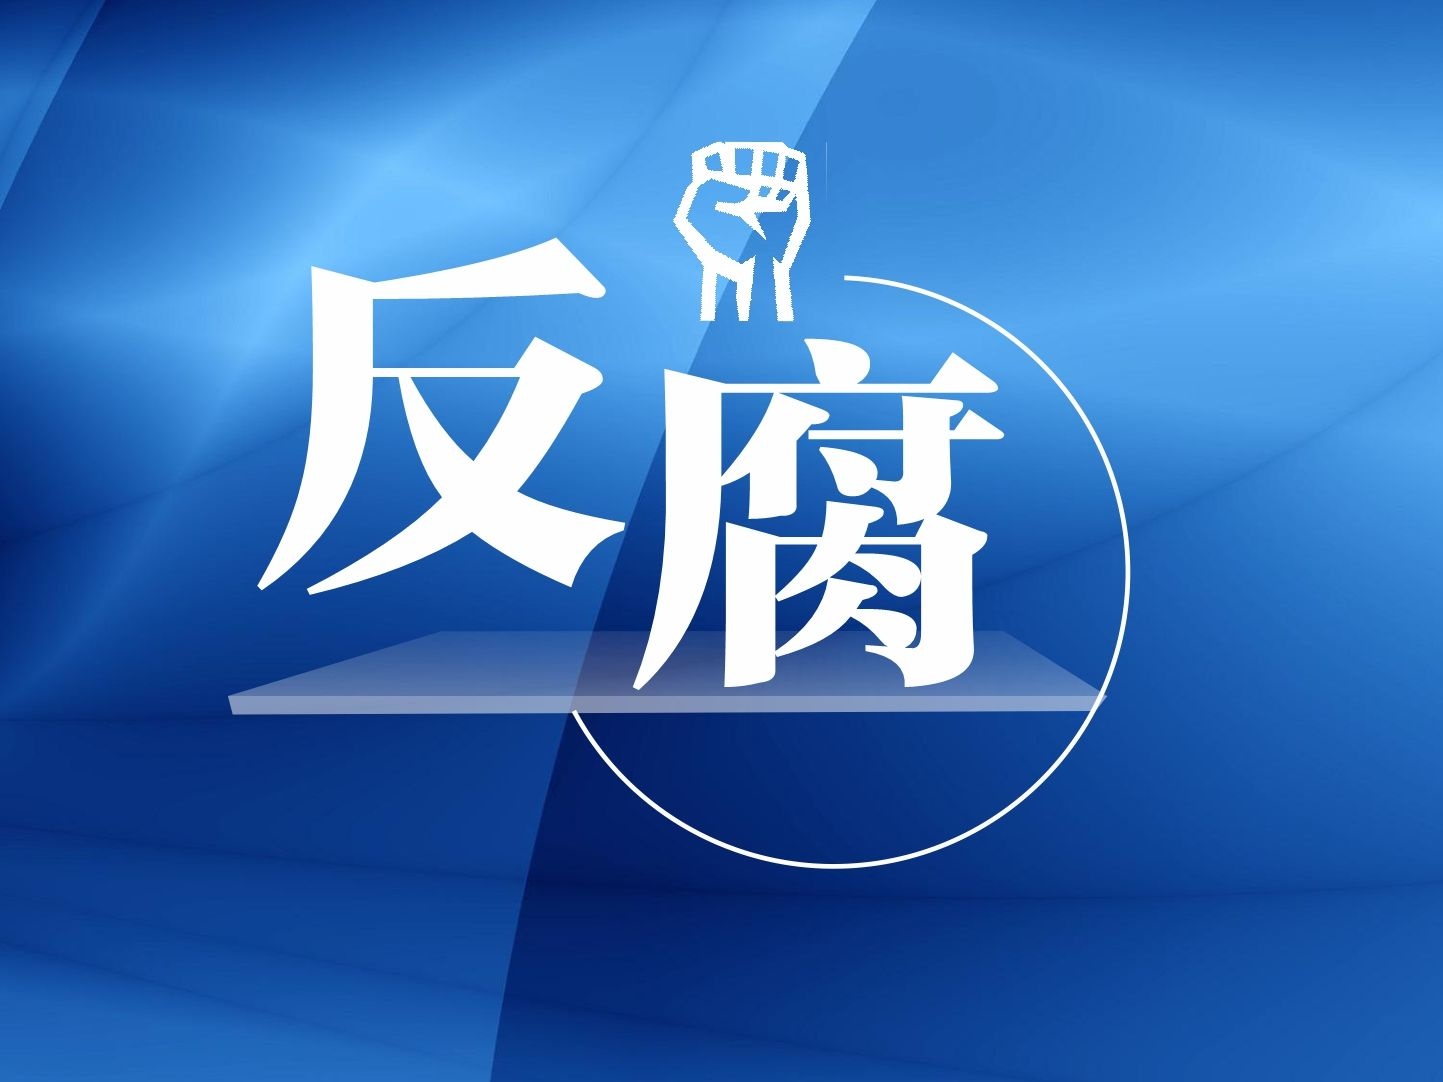 肇庆市人大常委会原党组书记、副主任李天严重违纪违法被开除党籍和公职